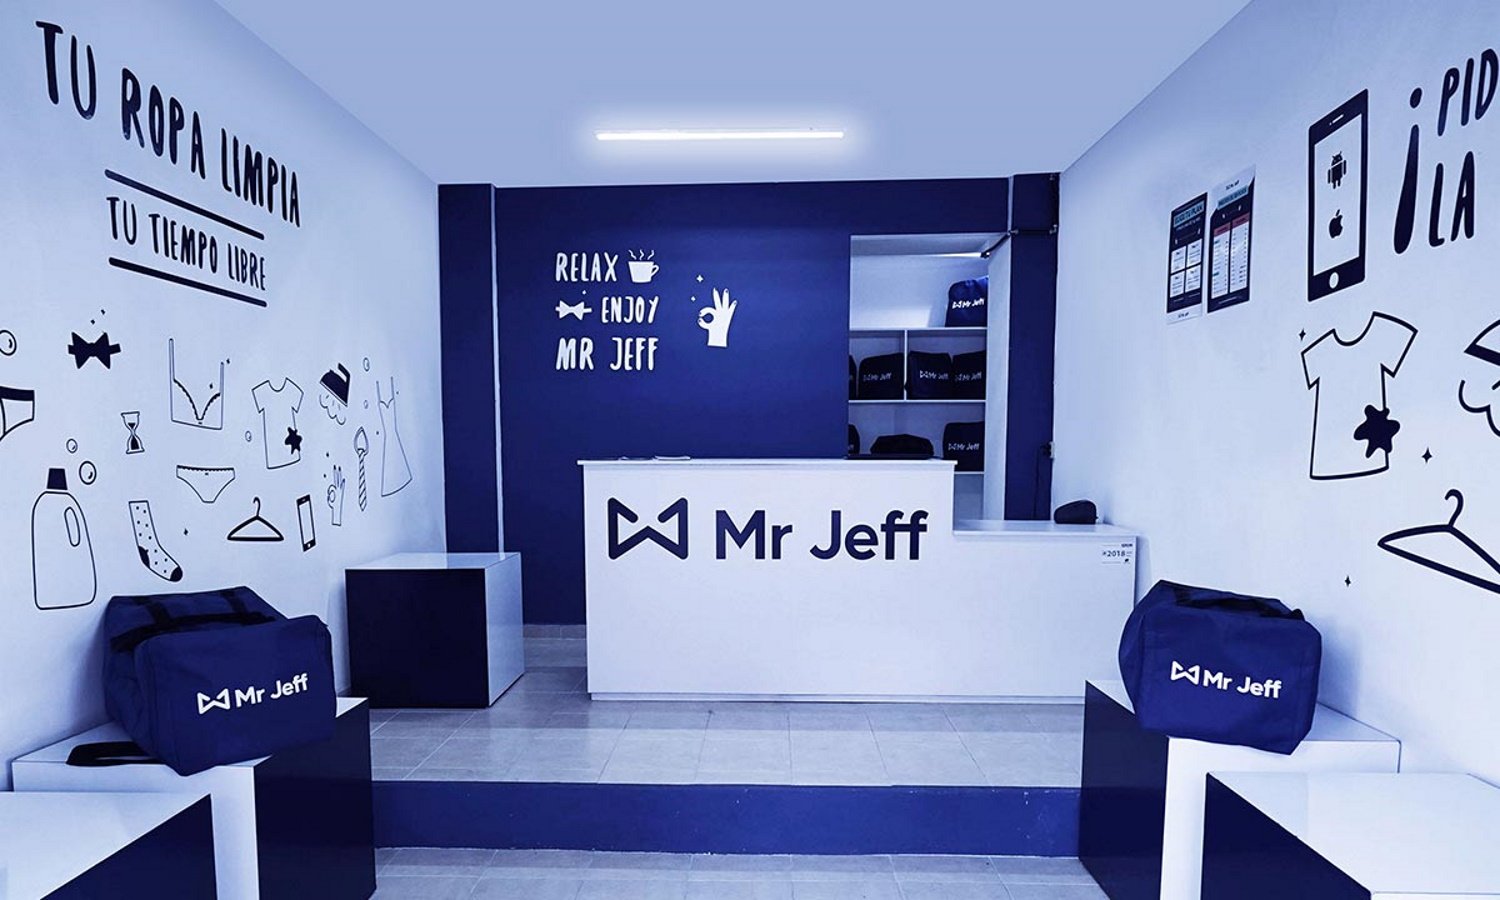 La start-up Jeff rep 83 milions i posa rumb a la rendibilitat després de mesos d'impagaments